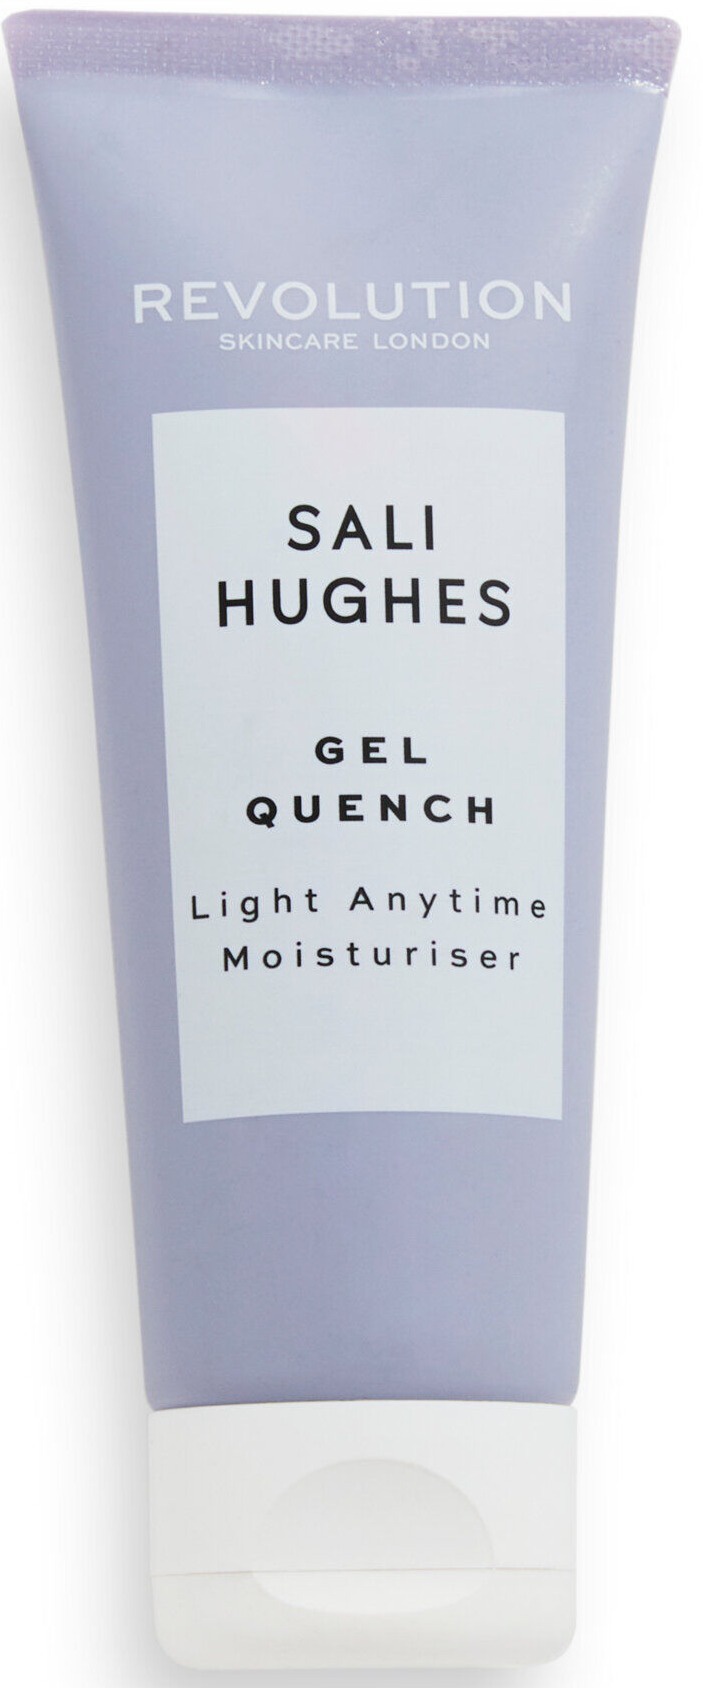 Revolution Skincare Sali Hughes Gel Quench Light Anytime Moisturiser